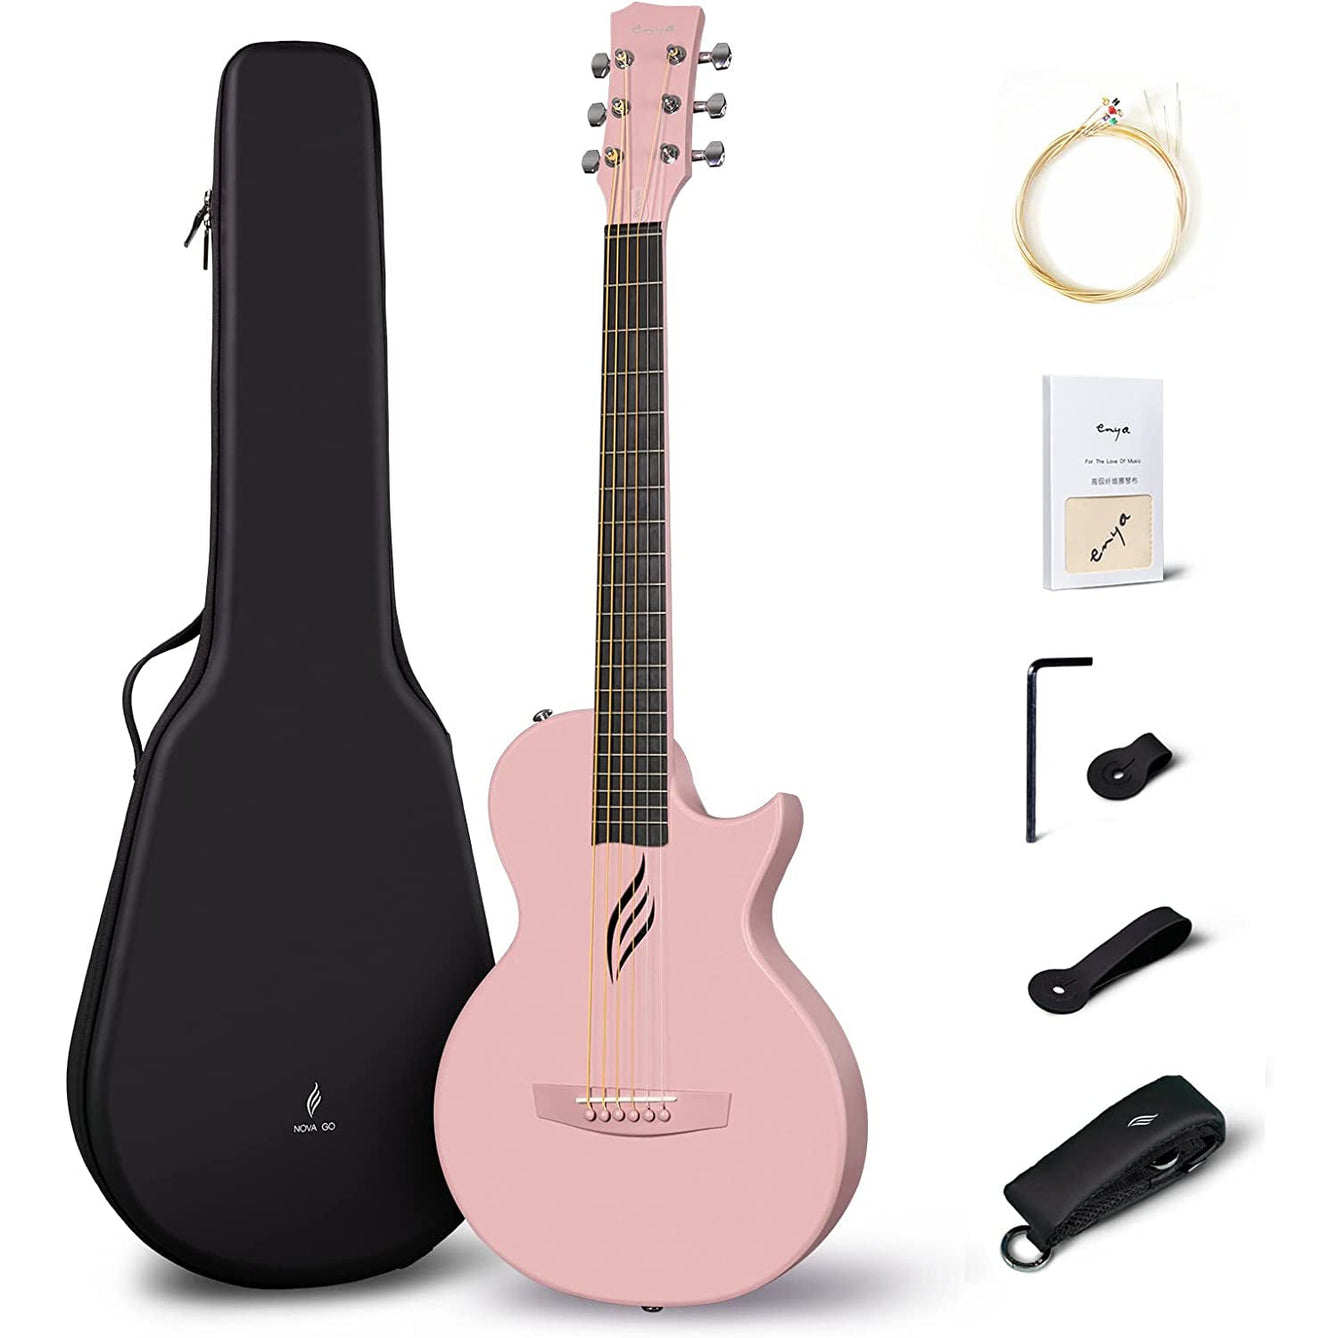 Đàn Guitar Acoustic Enya NOVA GO, Pink-Mai Nguyên Music